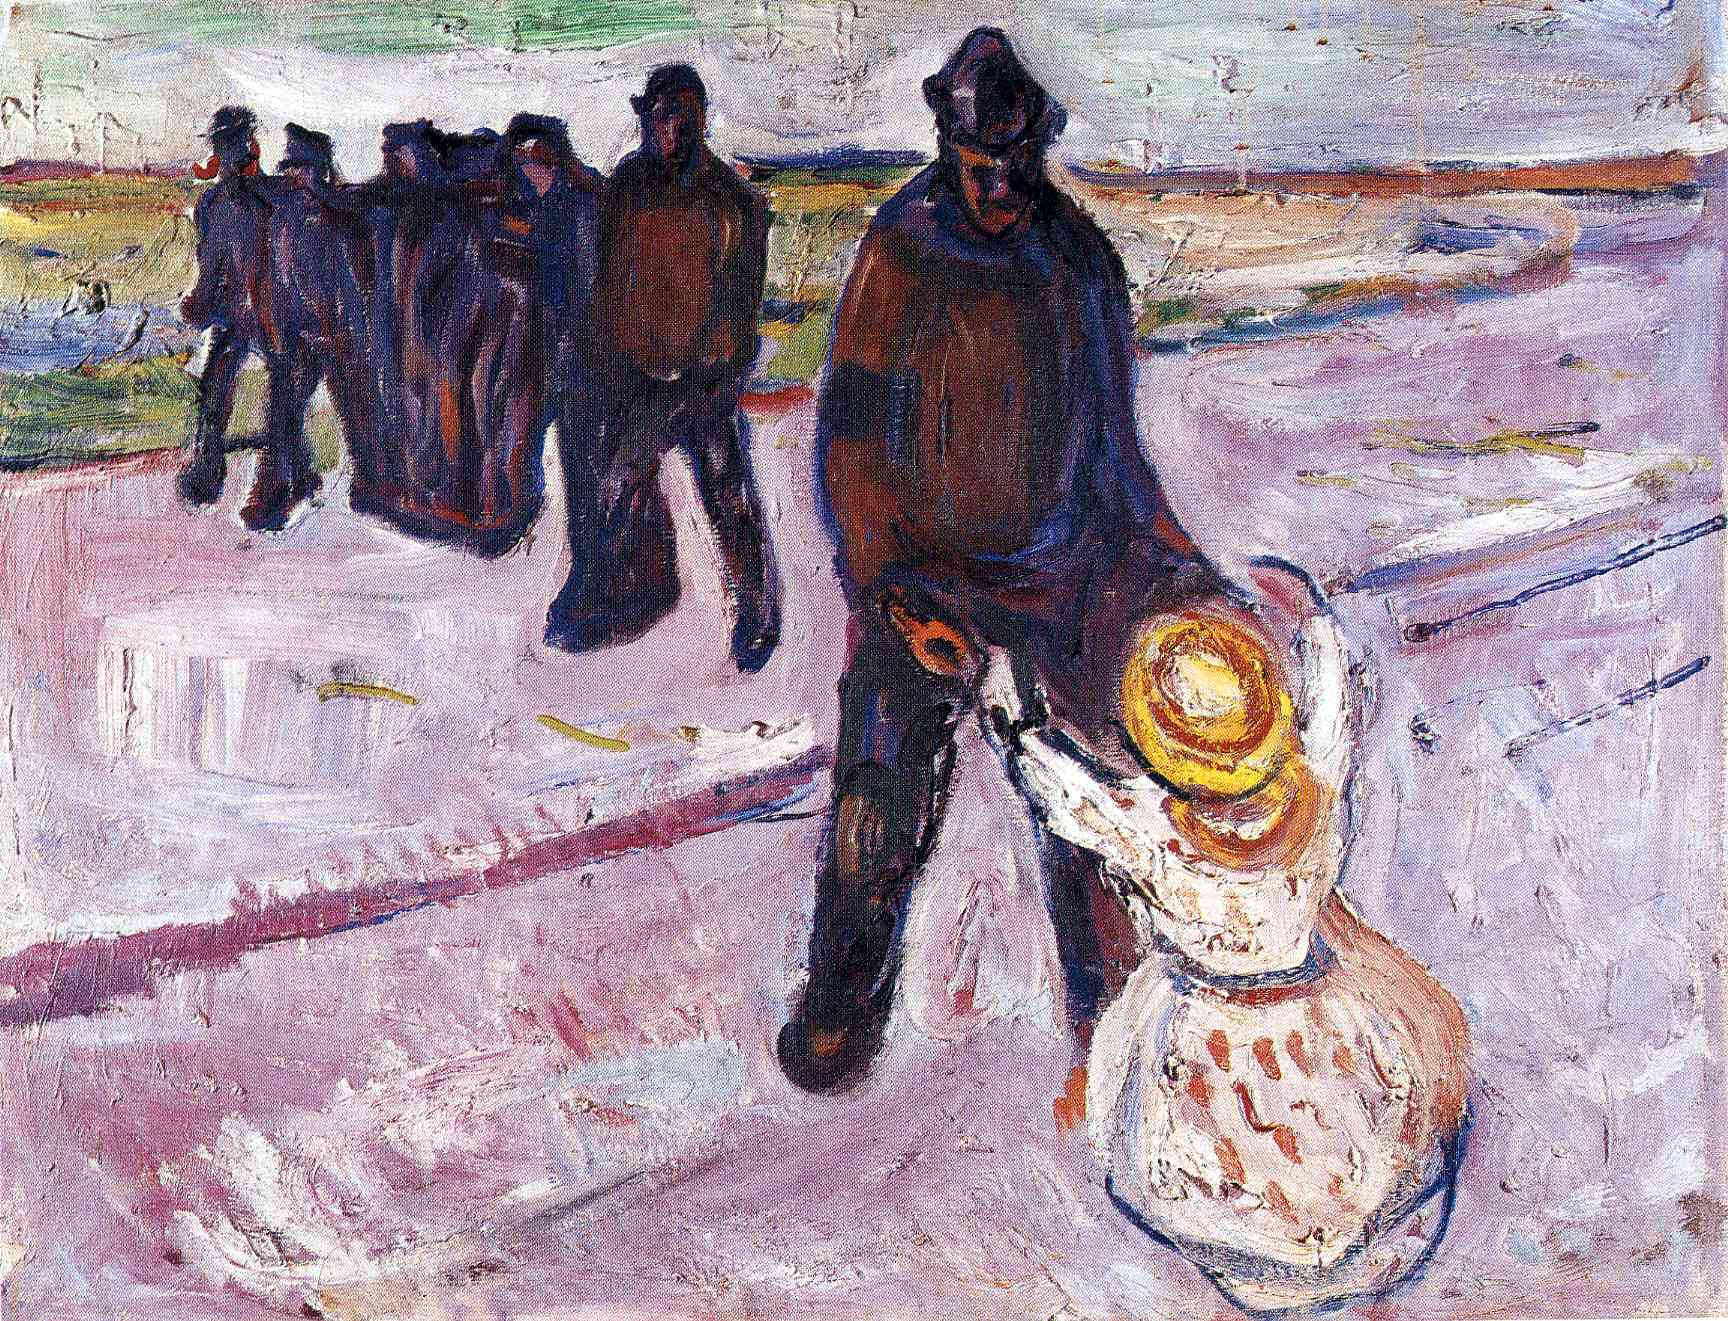 Trabajador y Niña by Edvard Munch - 1907 Colección privada